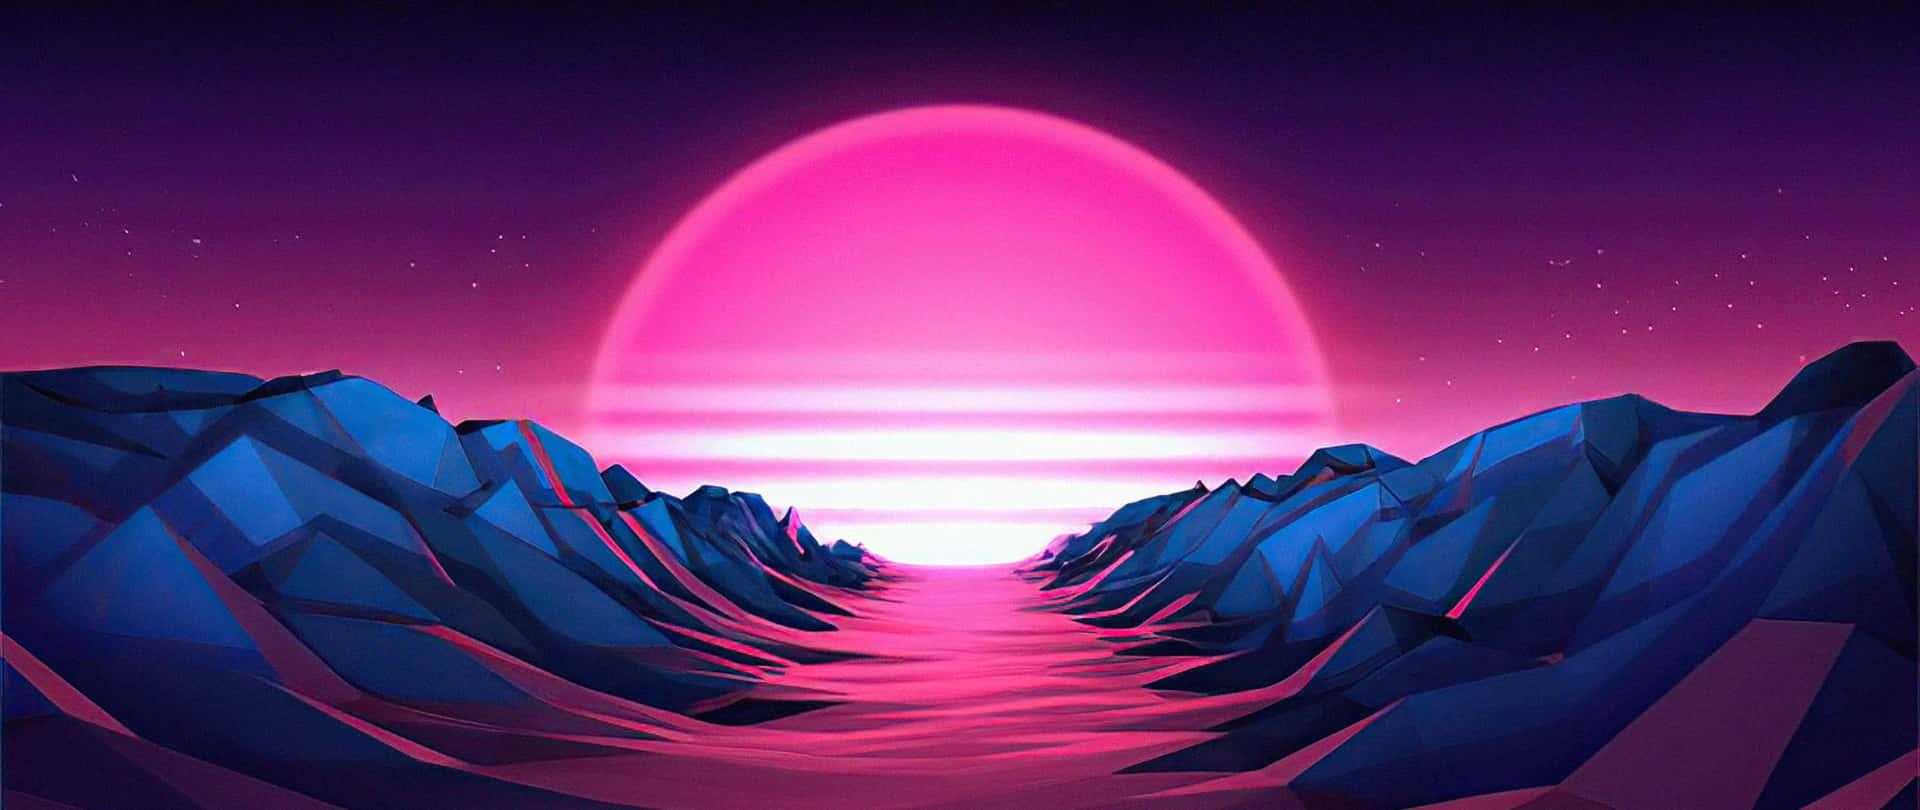 Pink Sun Through A Valley Art 2560x1080 Wallpaper